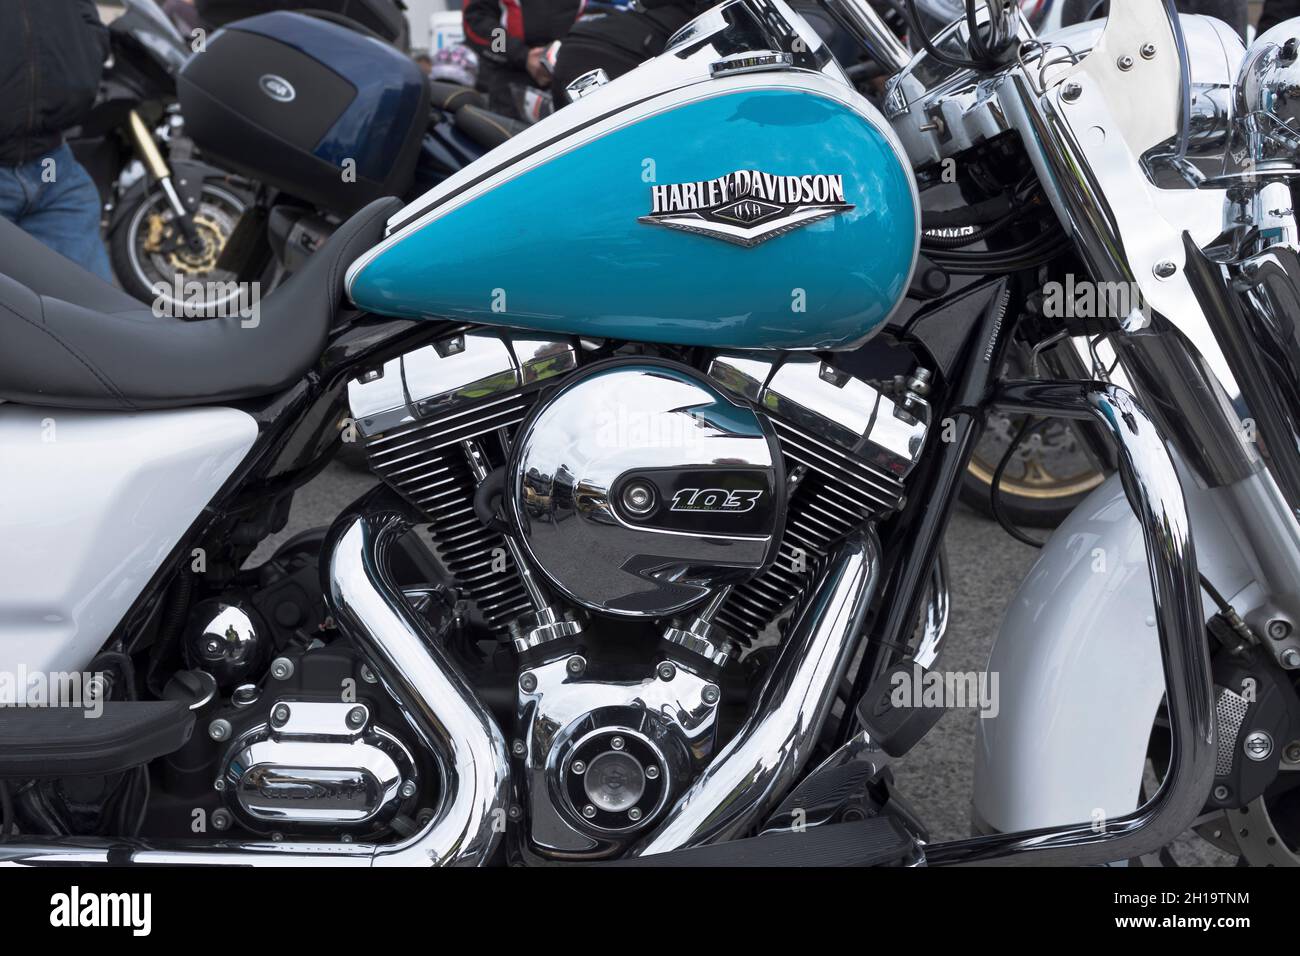 dh Harley Davidson 103 MOTOCICLETTA UK motociclette serbatoio benzina con logo motocicli motore moto primo piano Foto Stock